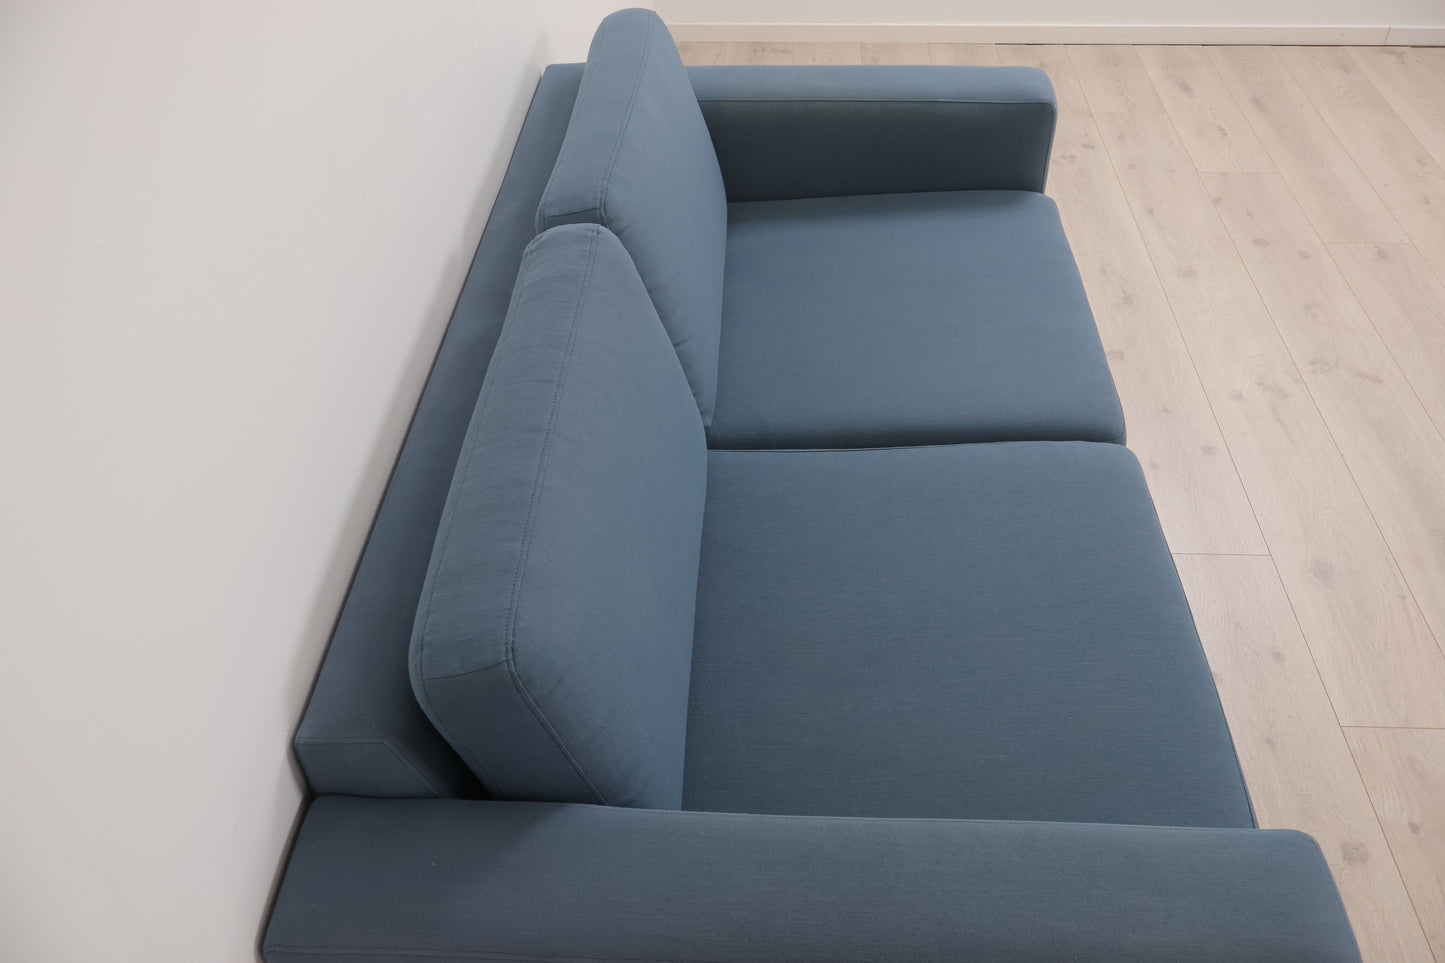 Nyrenset | Blå Bolia Scandinavia 2-seter sofa med eikebein